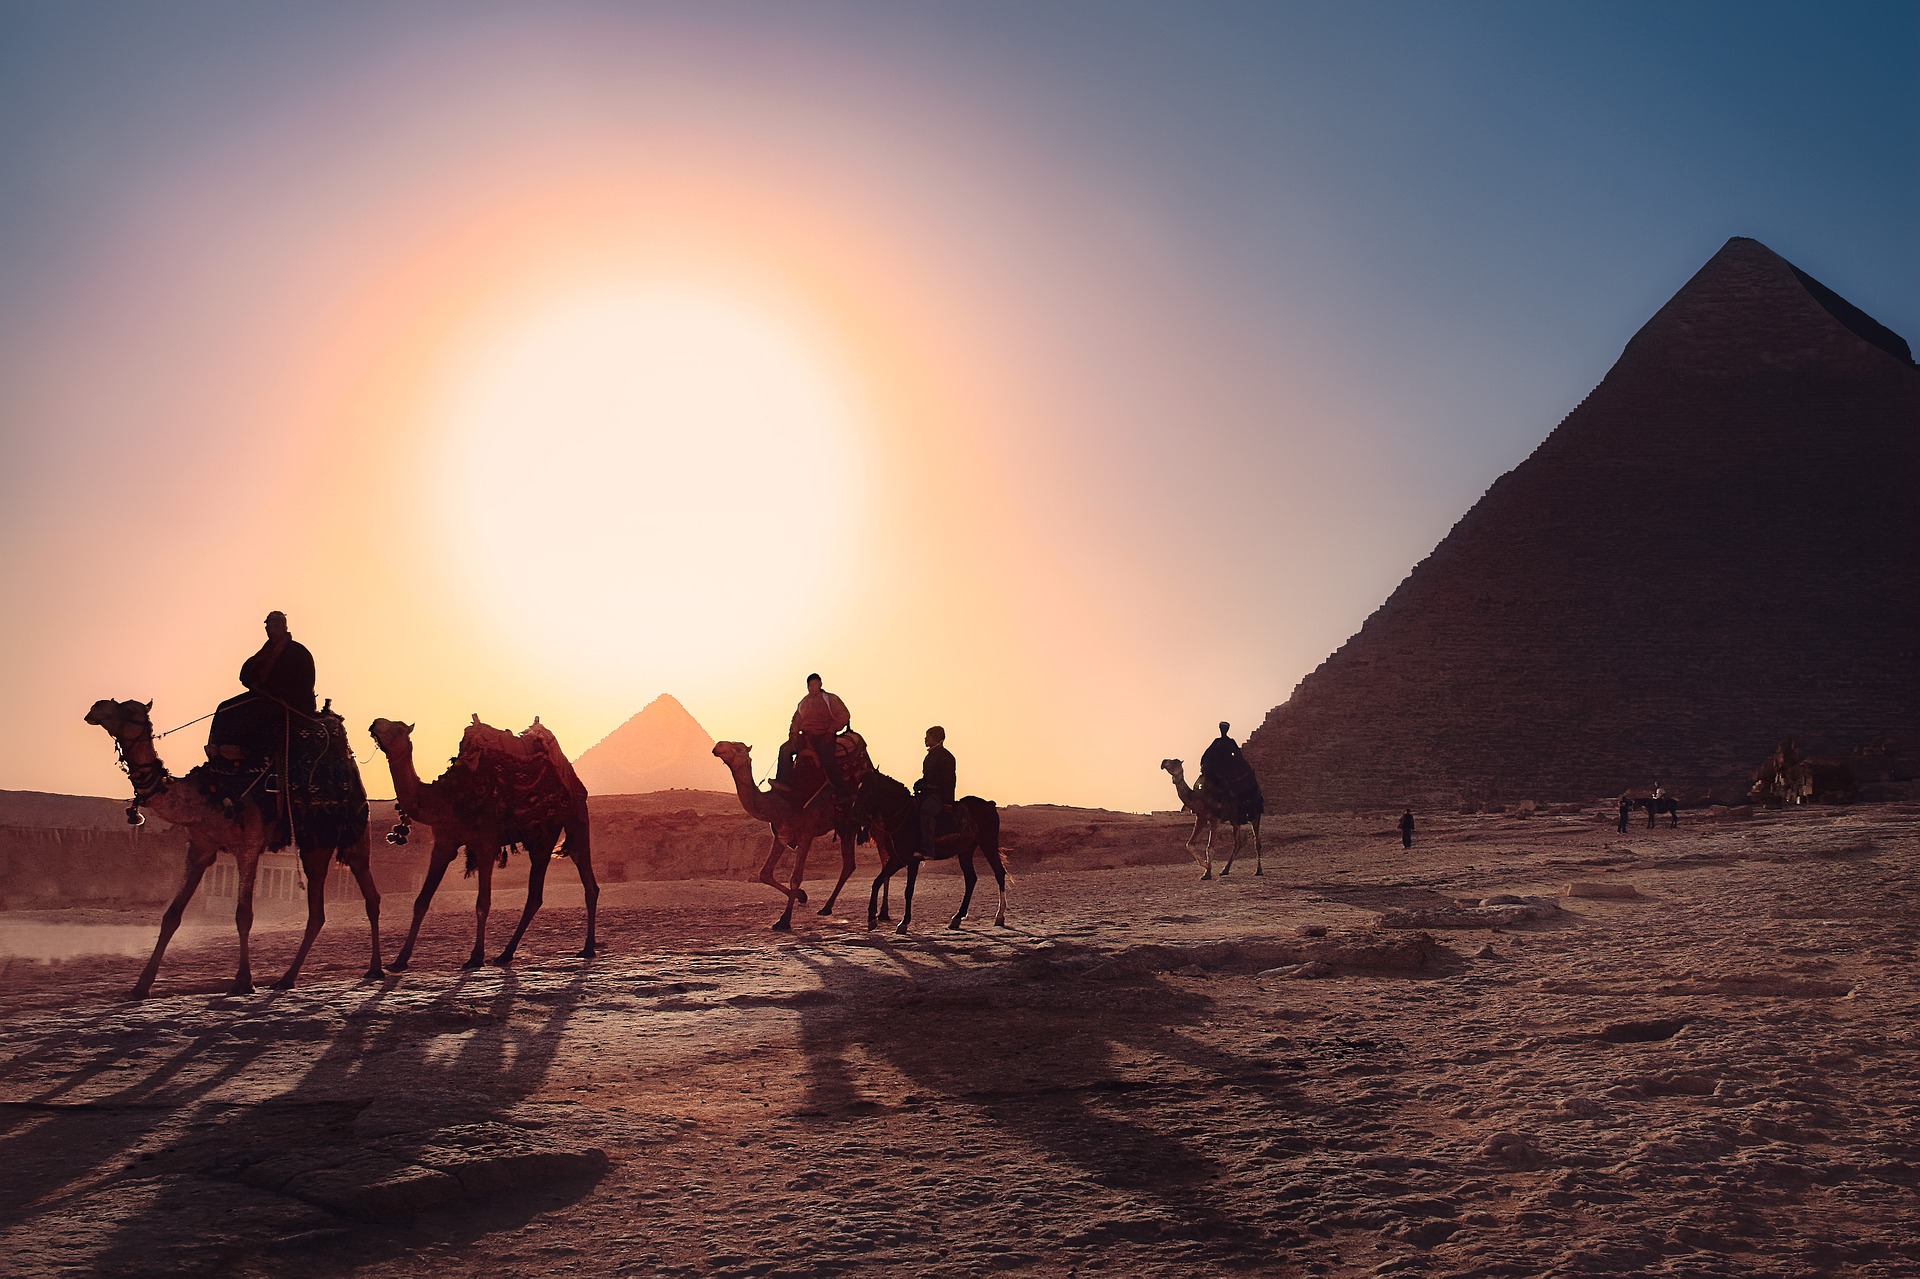 Ägypten Pyramiden Gizeh